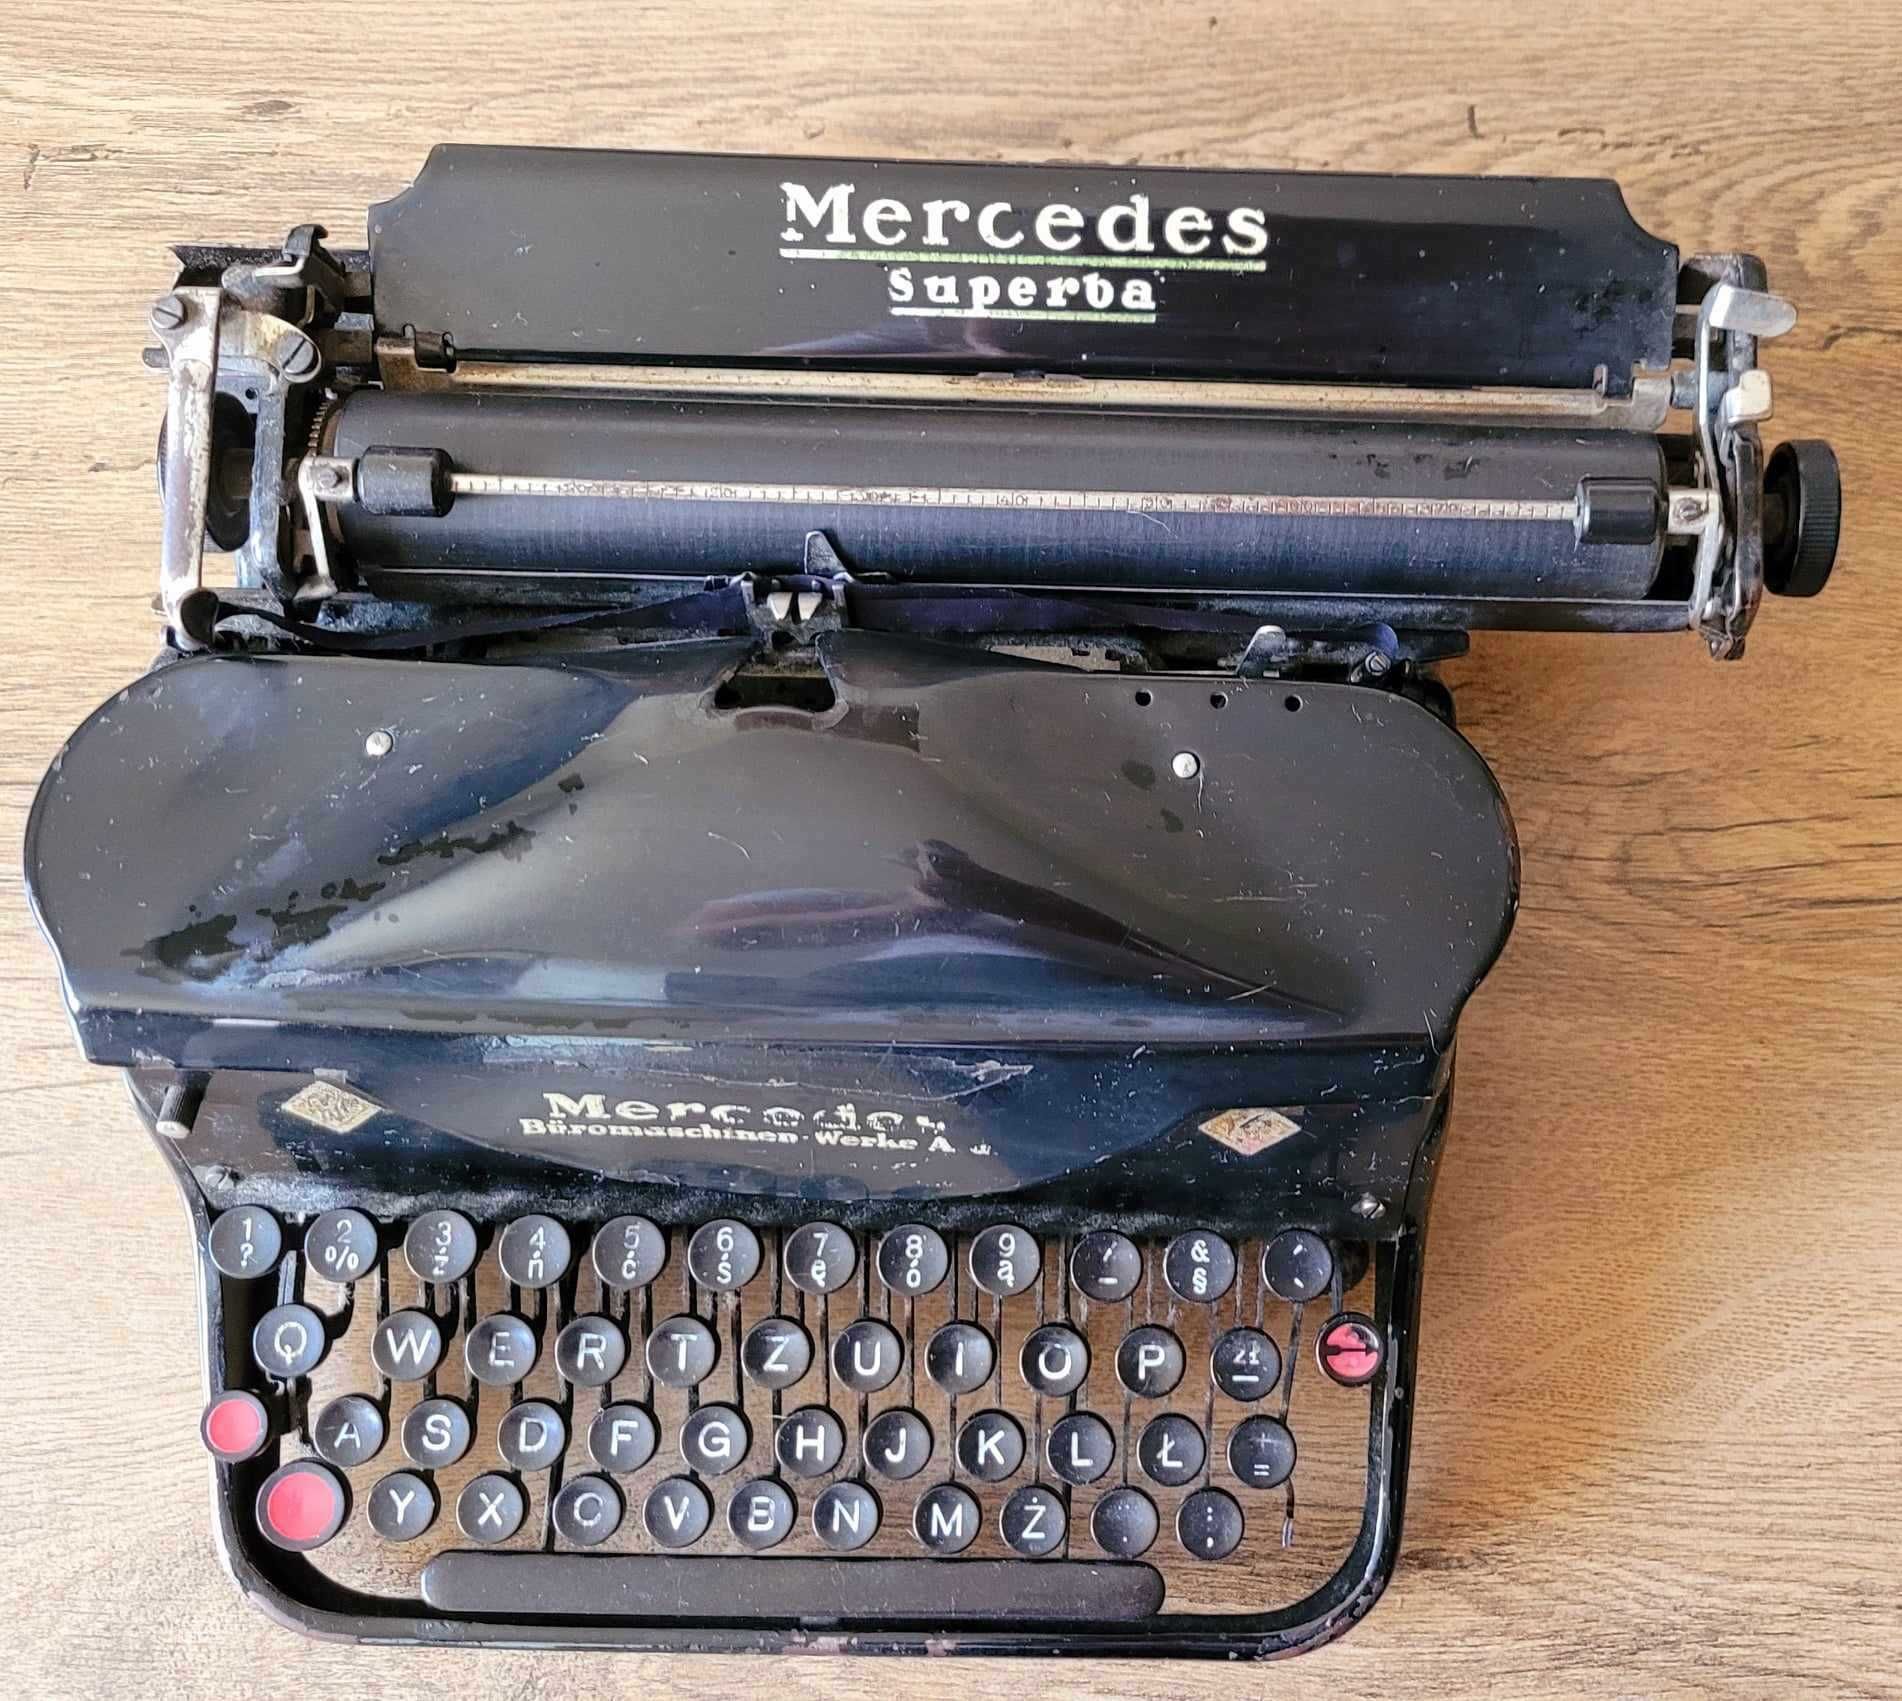 Maszyna do pisania Mercedes superba - maszyna do renowacji